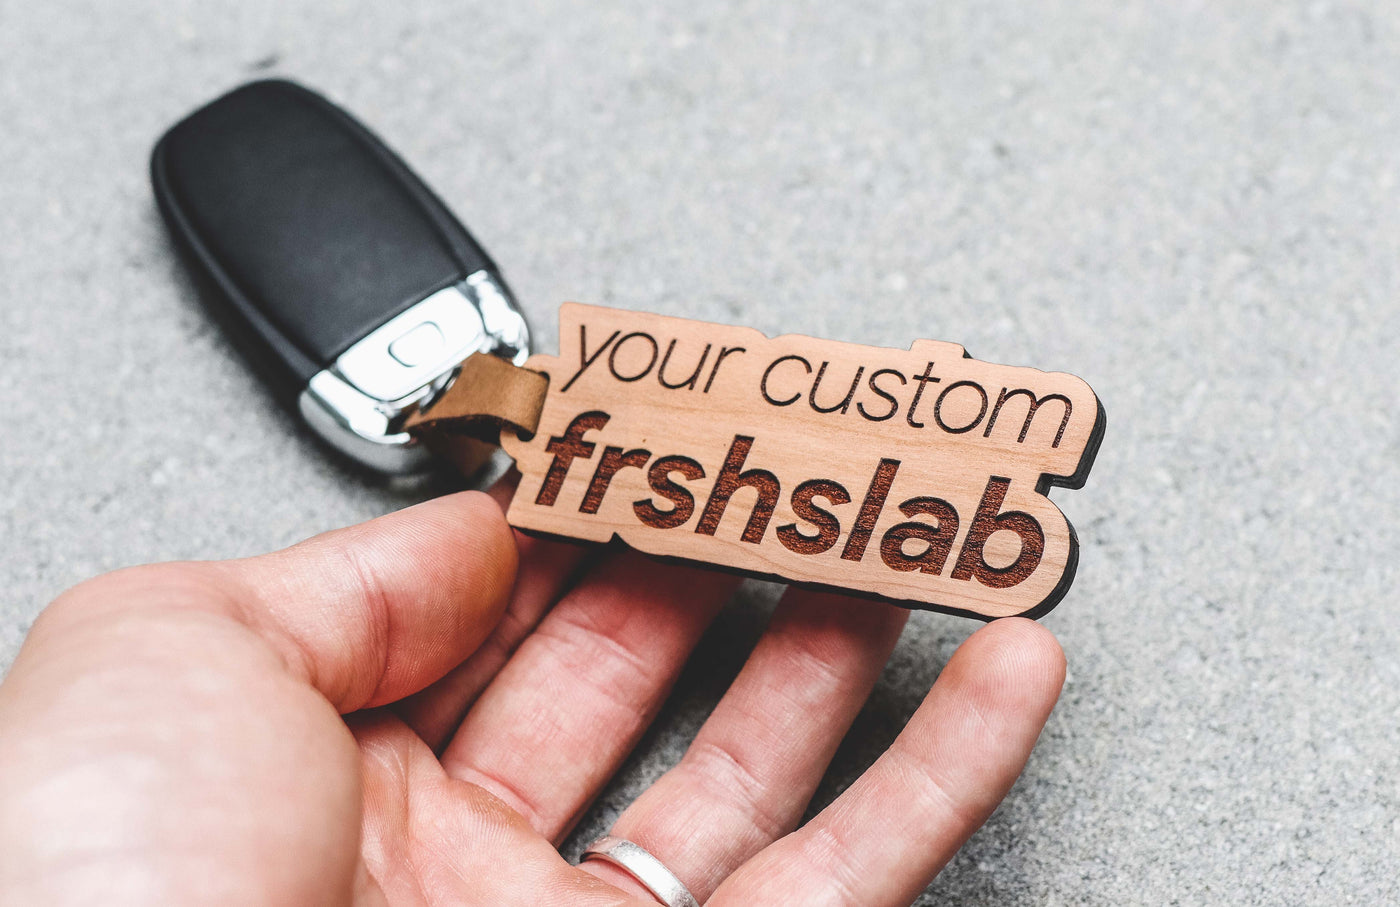 Your Custom Frshslabs Keychain